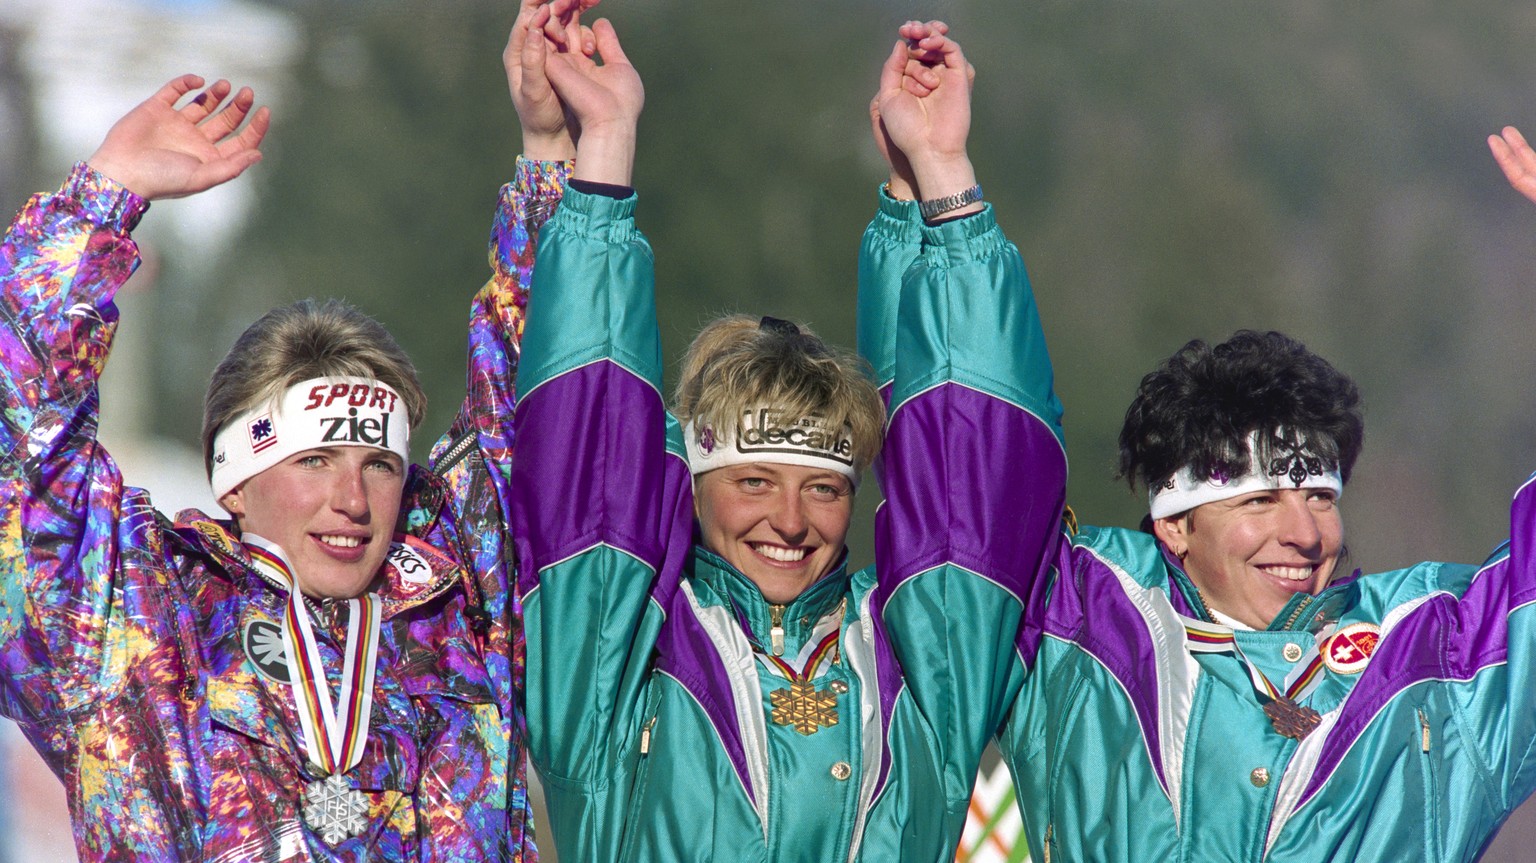 Chantal Bournissen, Mitte, gewinnt bei den Alpinen Skiweltmeisterschaften in Saalbach die Kombination vor Ingrid Stoeckl, links, und Vreni Schneider, rechts, aufgenommen am 25. Januar 1991. (KEYSTONE/ ...